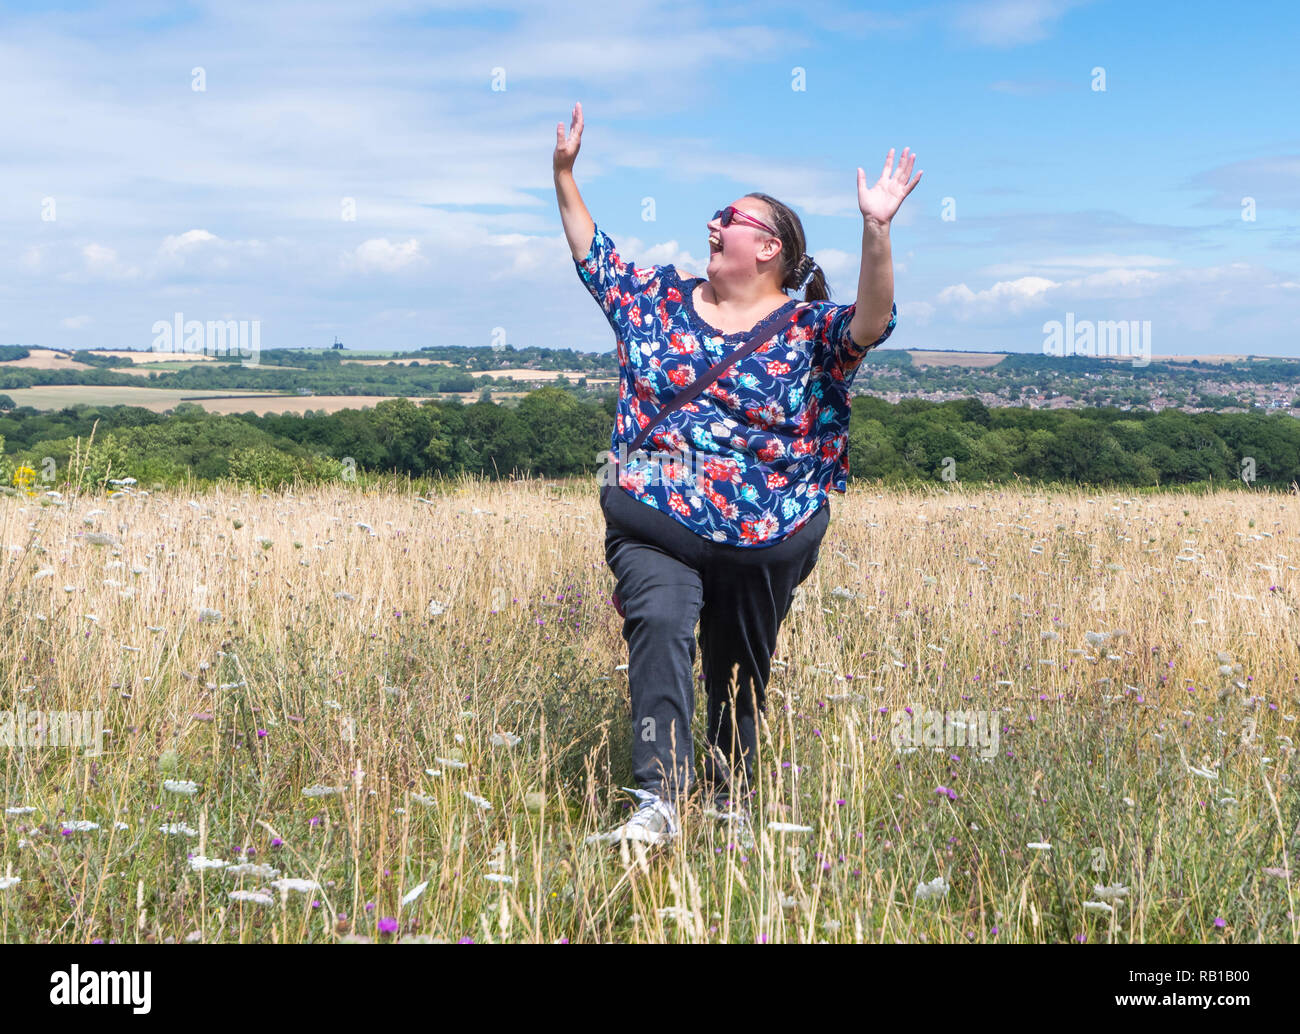 Junge Frau vor Freude hüpfend auf einer Wiese oder einem Feld in der Landschaft, UK. Laufen und springen. Happy Konzept. Arme nach oben. Glück Konzept. Stockfoto